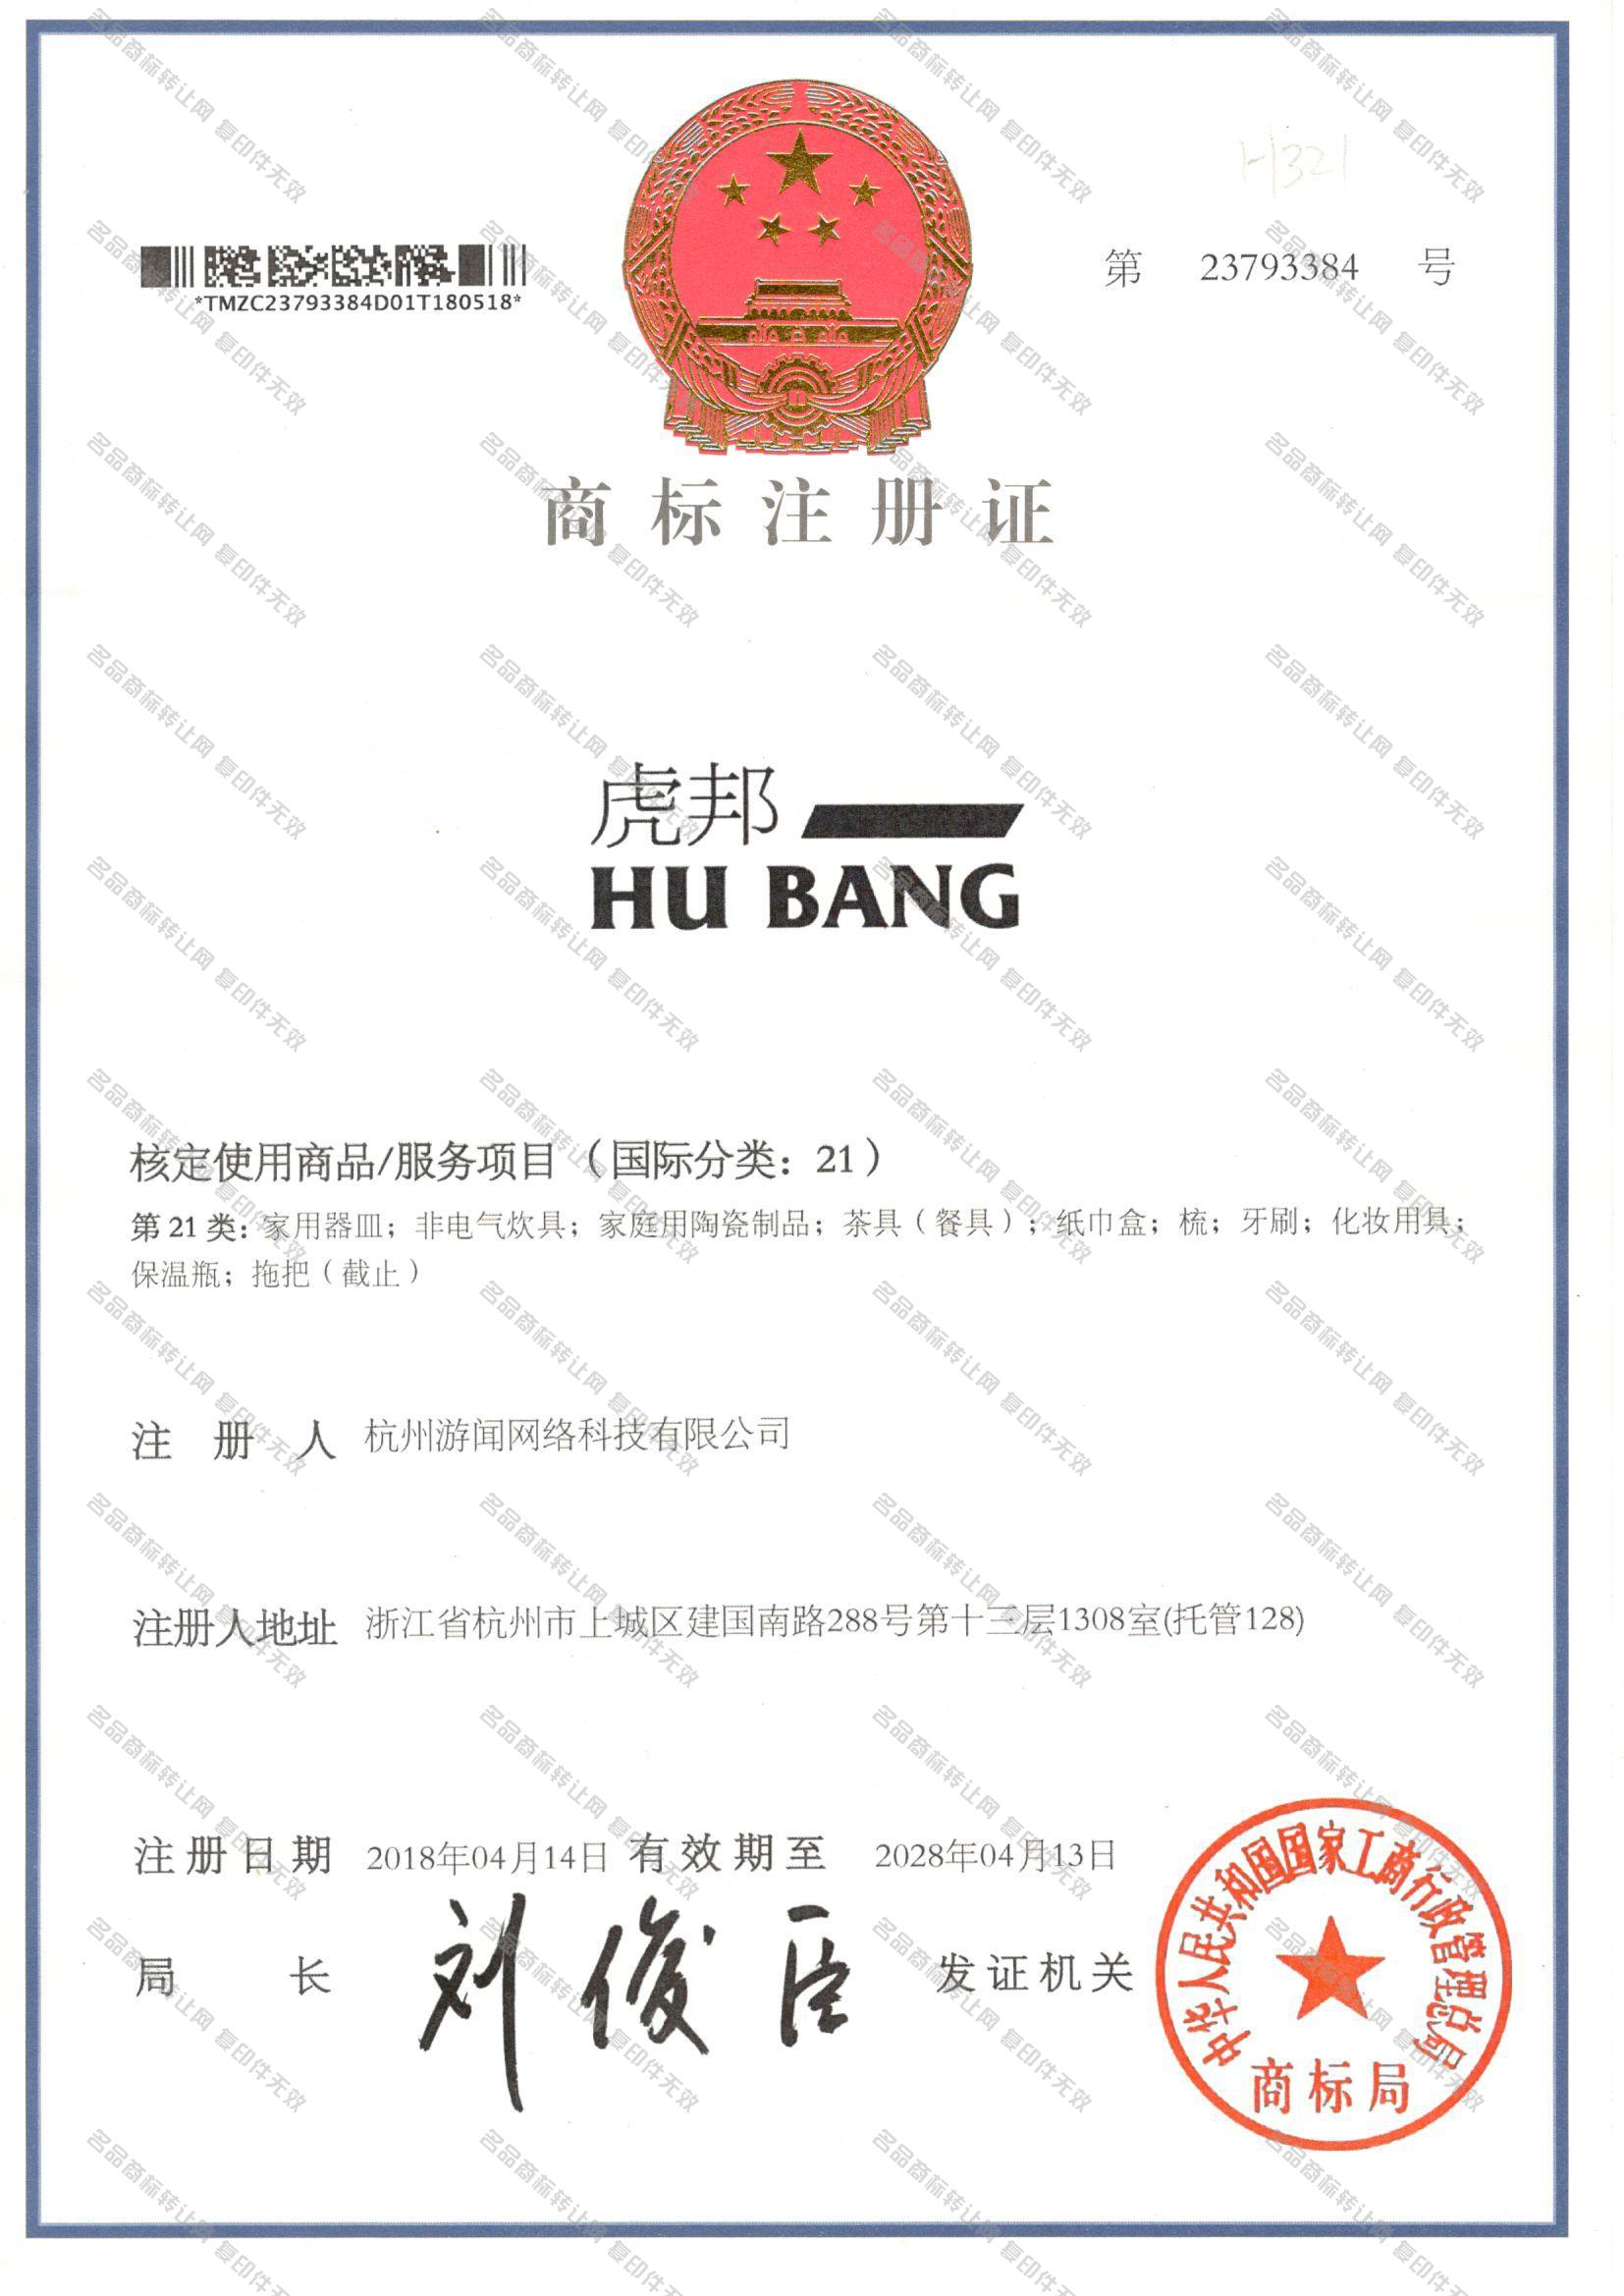 虎邦 HUBANG注册证